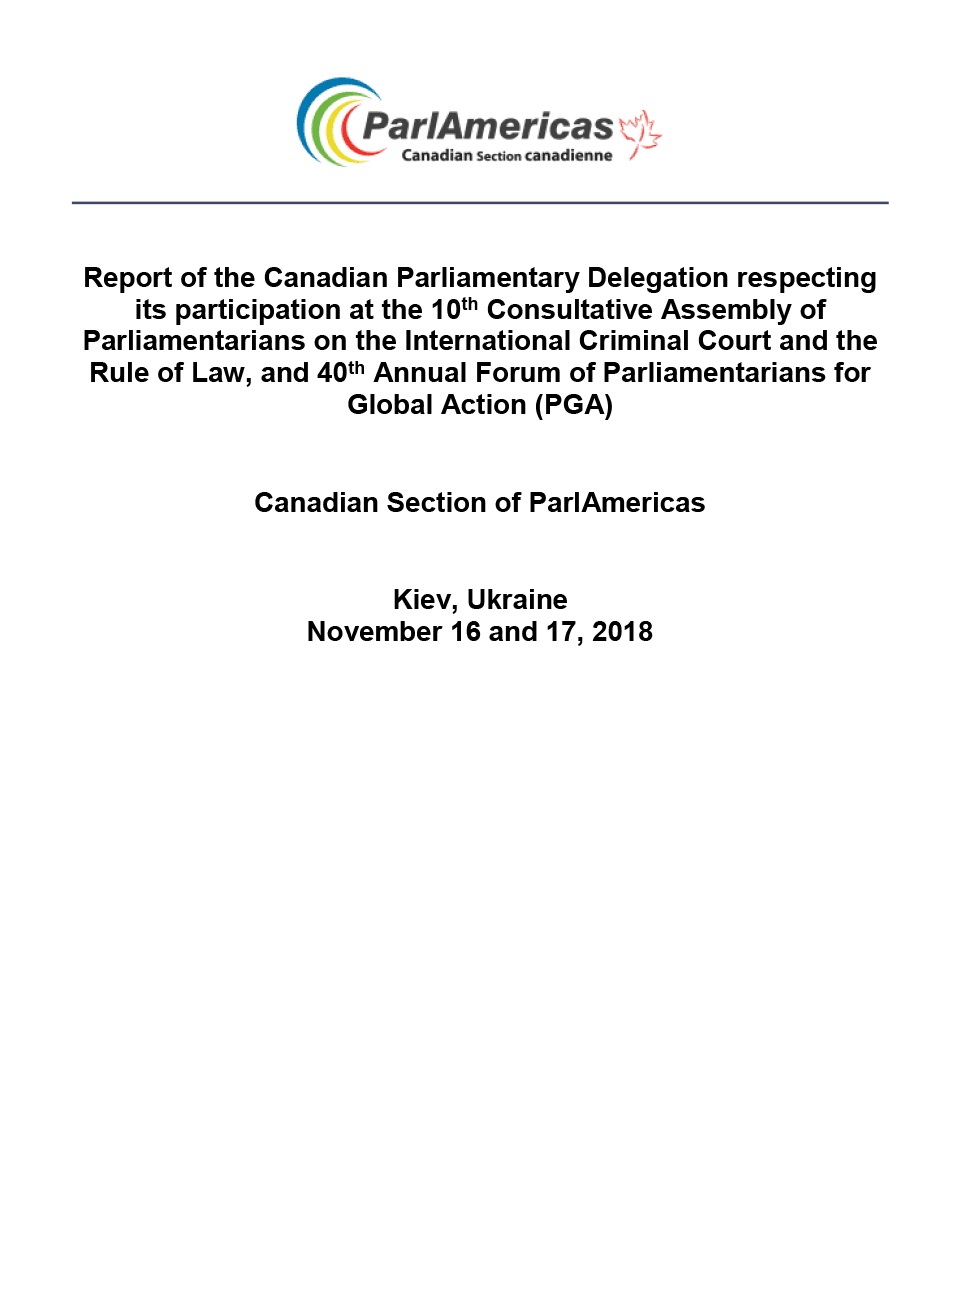 Rapport de la délégation parlementaire canadienne sur sa participation à la 10e Assemblée consultative des parlementaires sur la Cour pénale internationale et l’État de droit